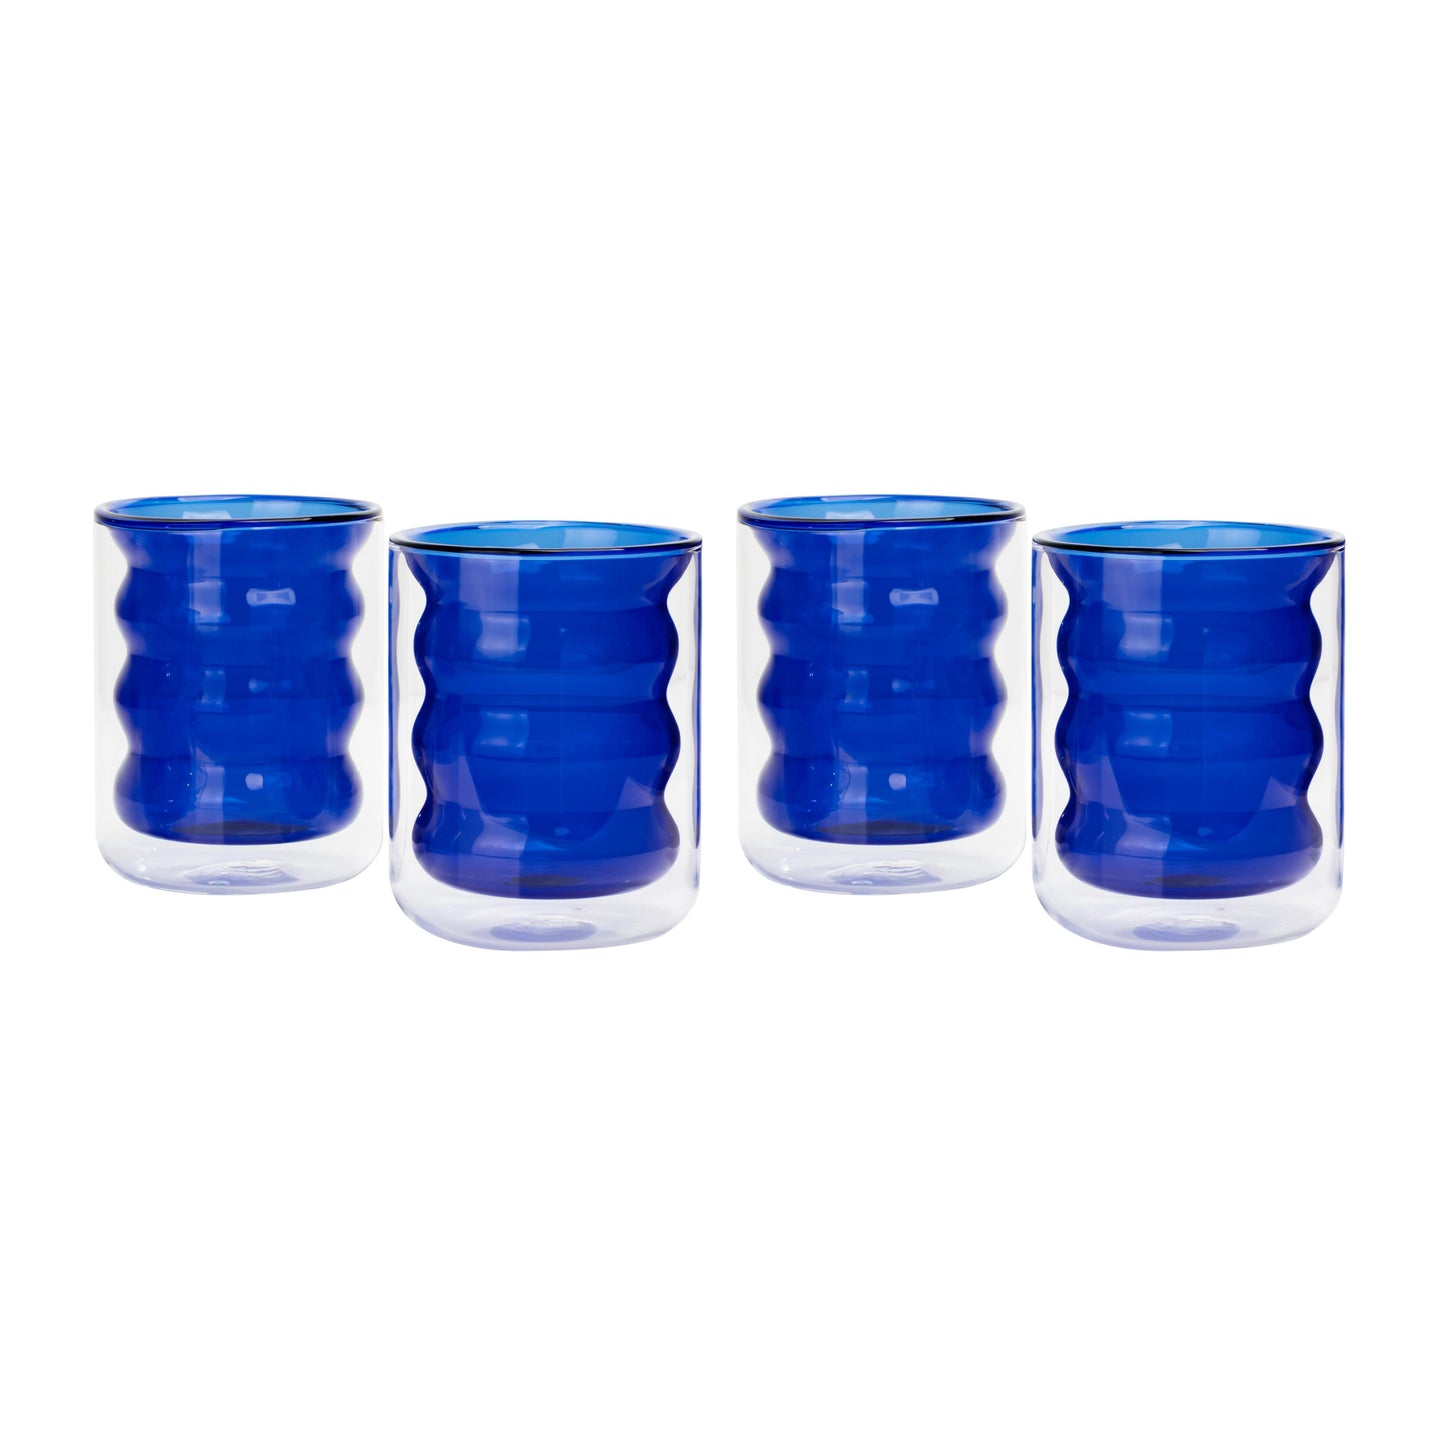 caren blue water glass - set of 4